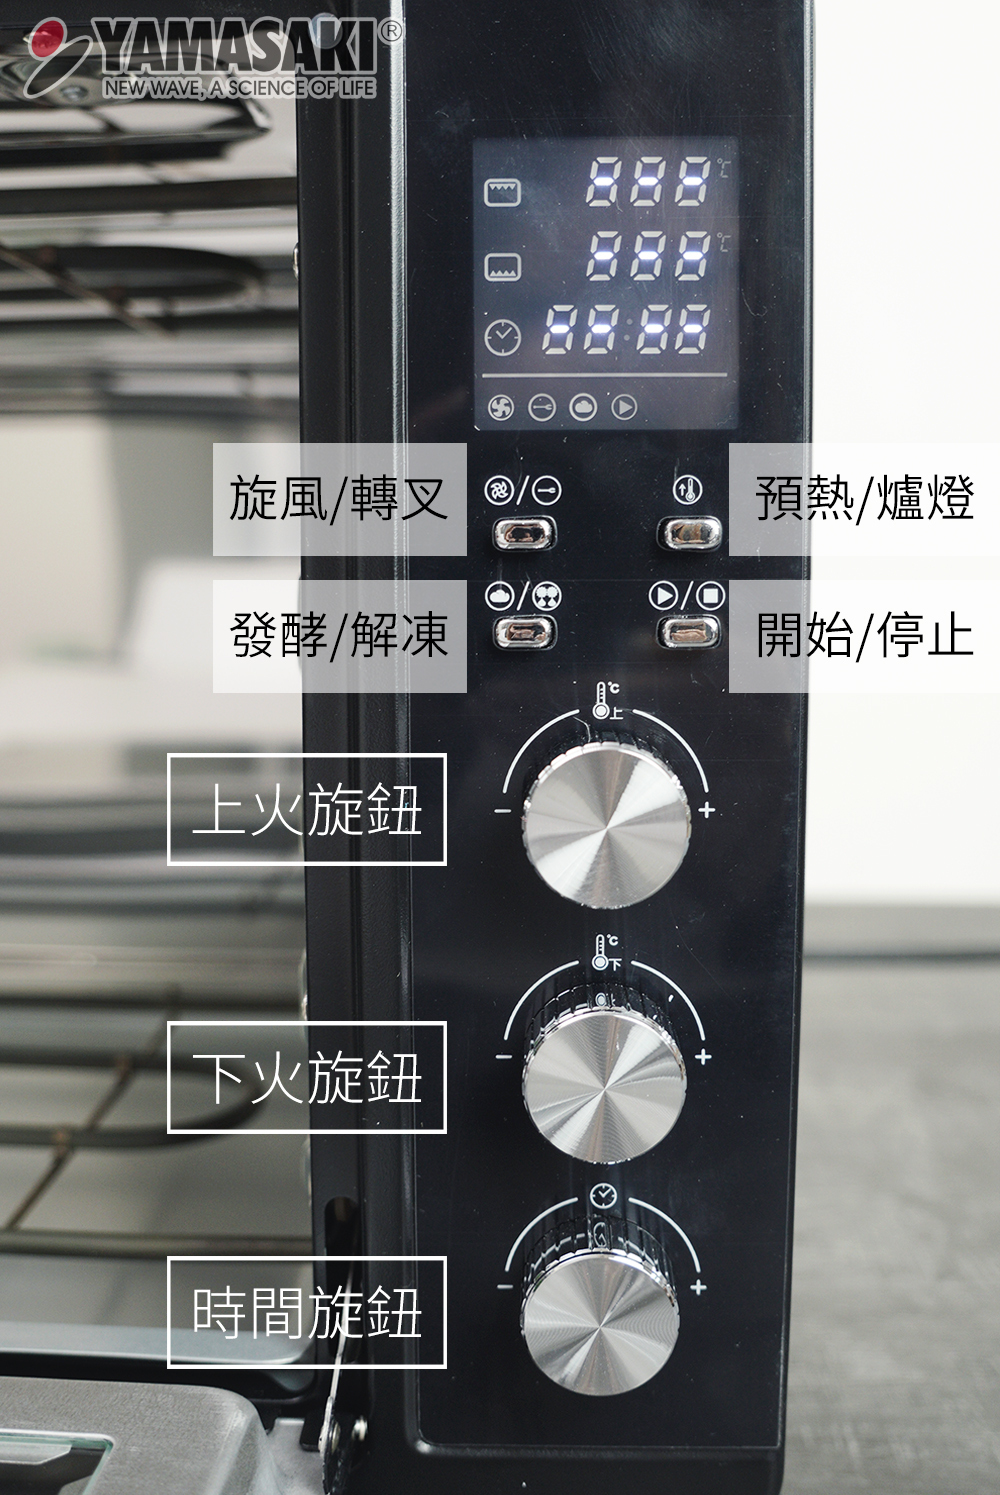 山崎43L微電腦烤箱SK-4680M功能按鈕說明